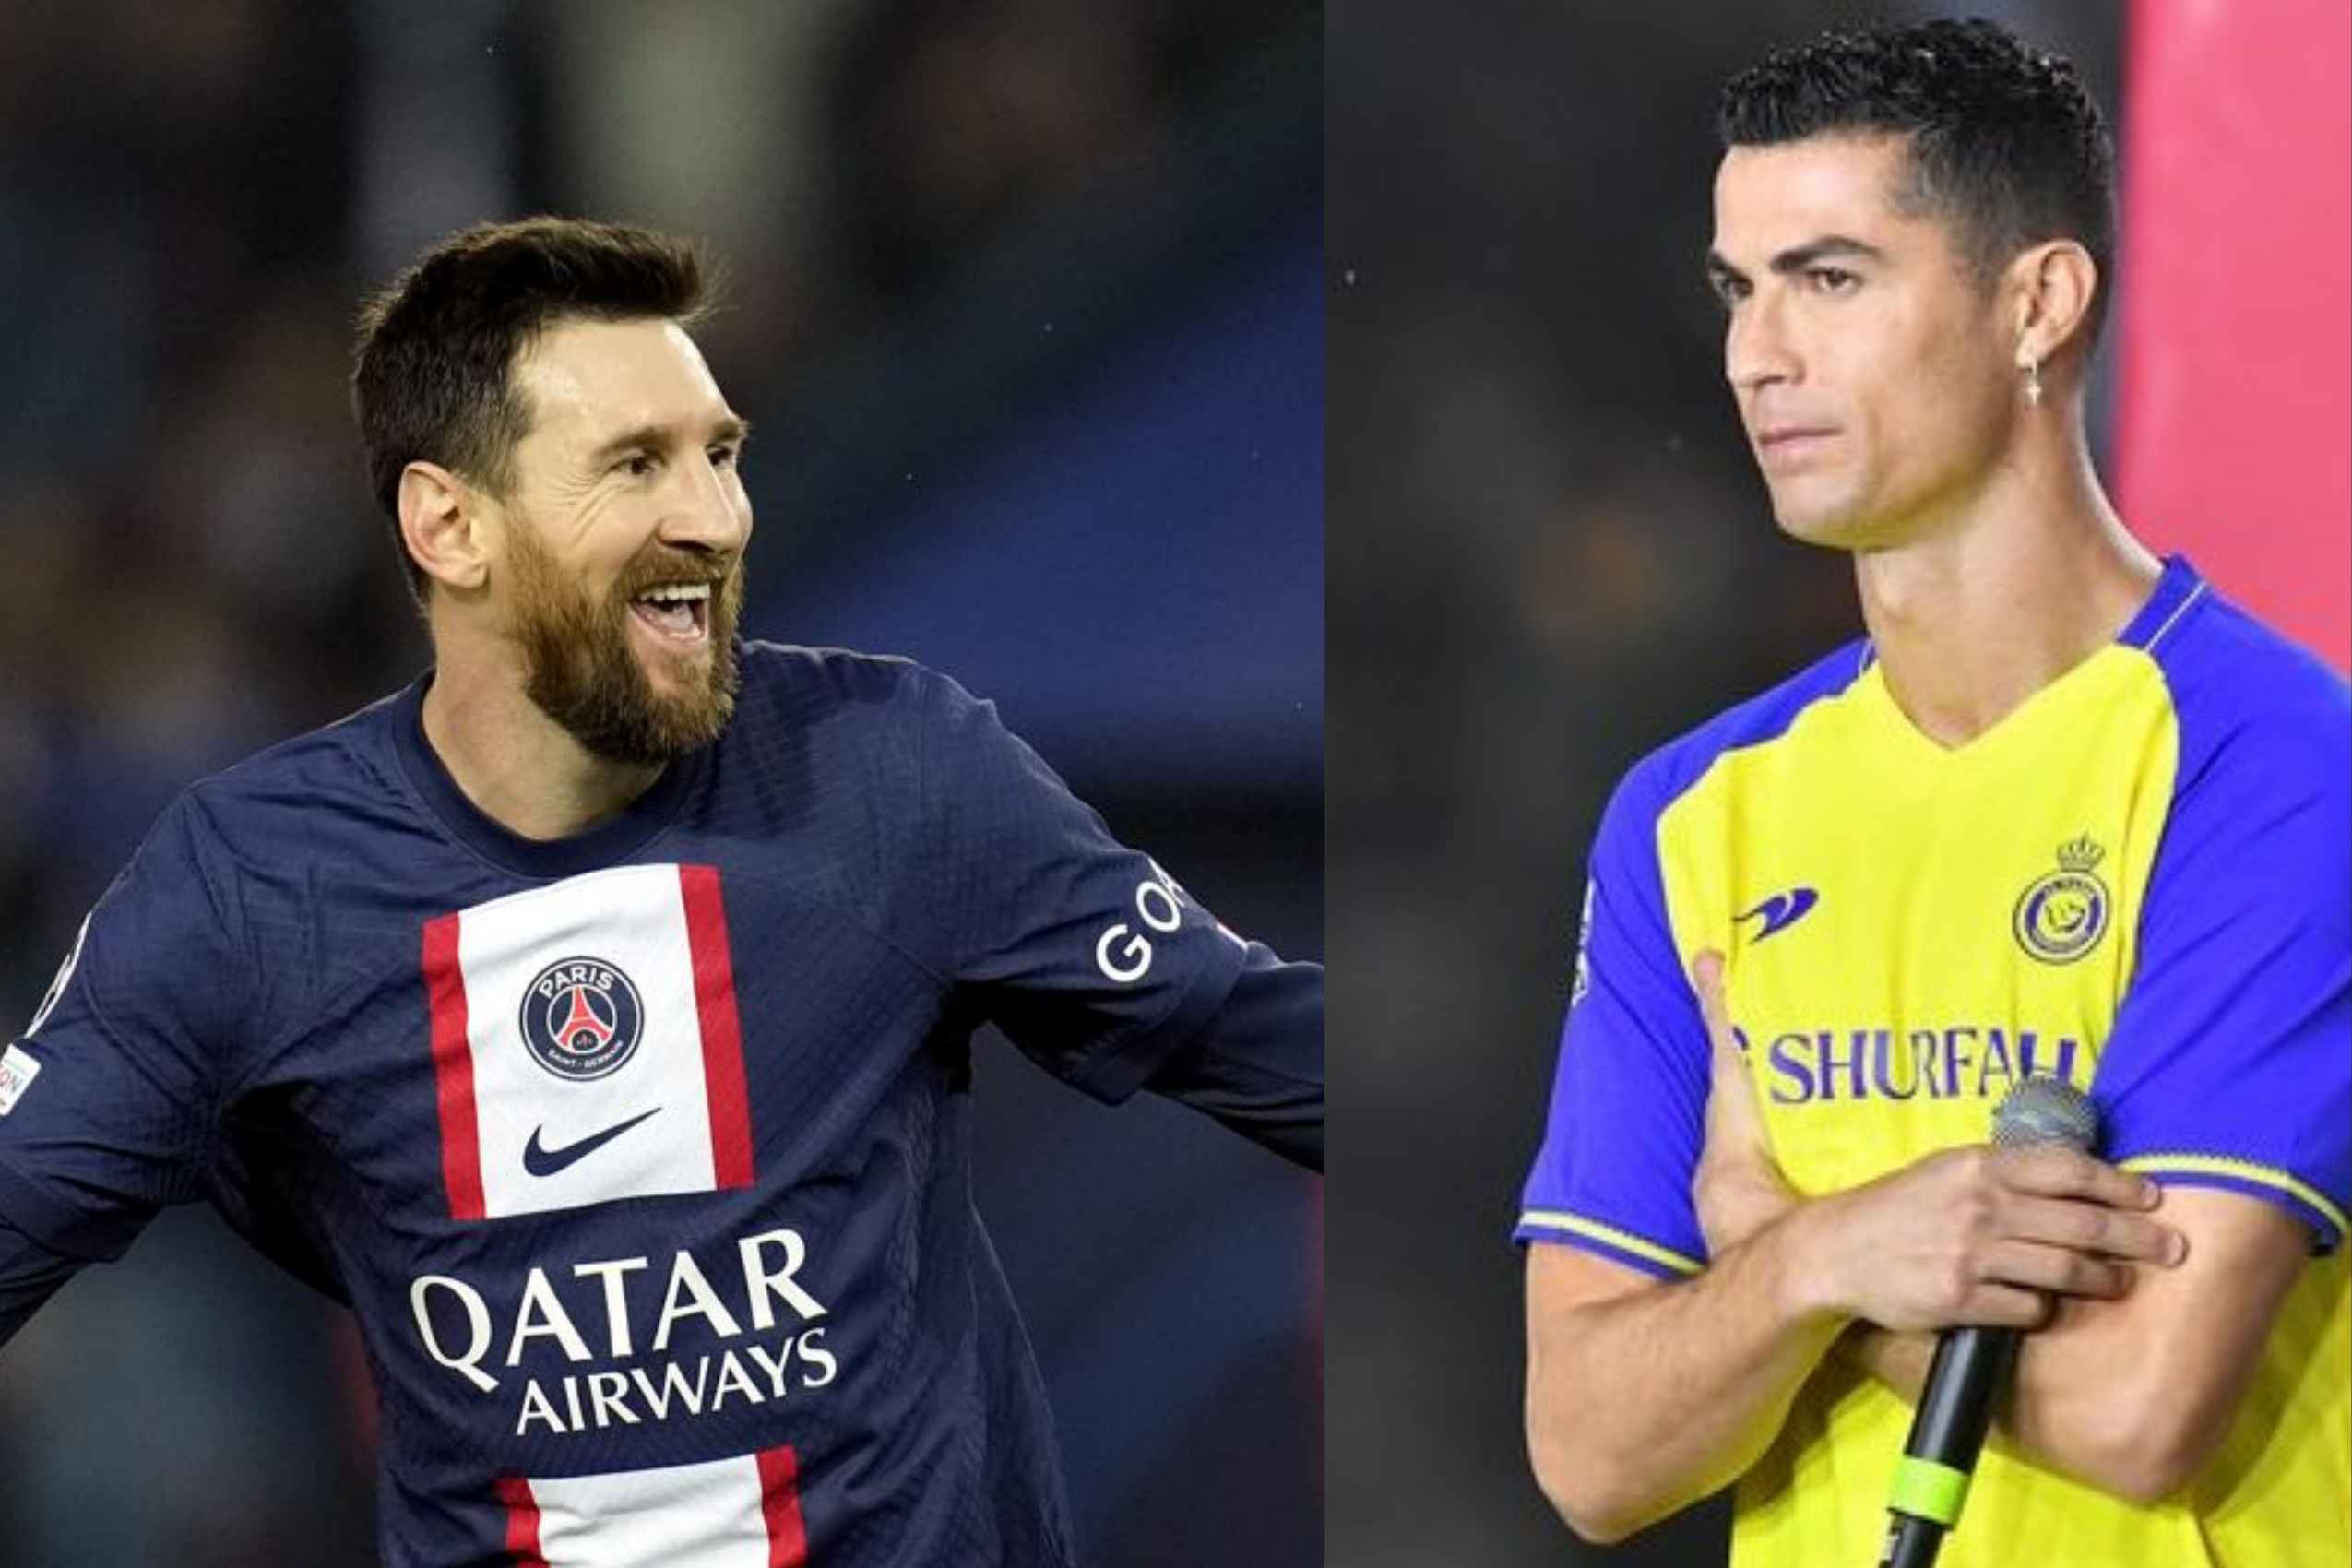 It's Messi vs. Ronaldo again in unlikely Saudi reunion